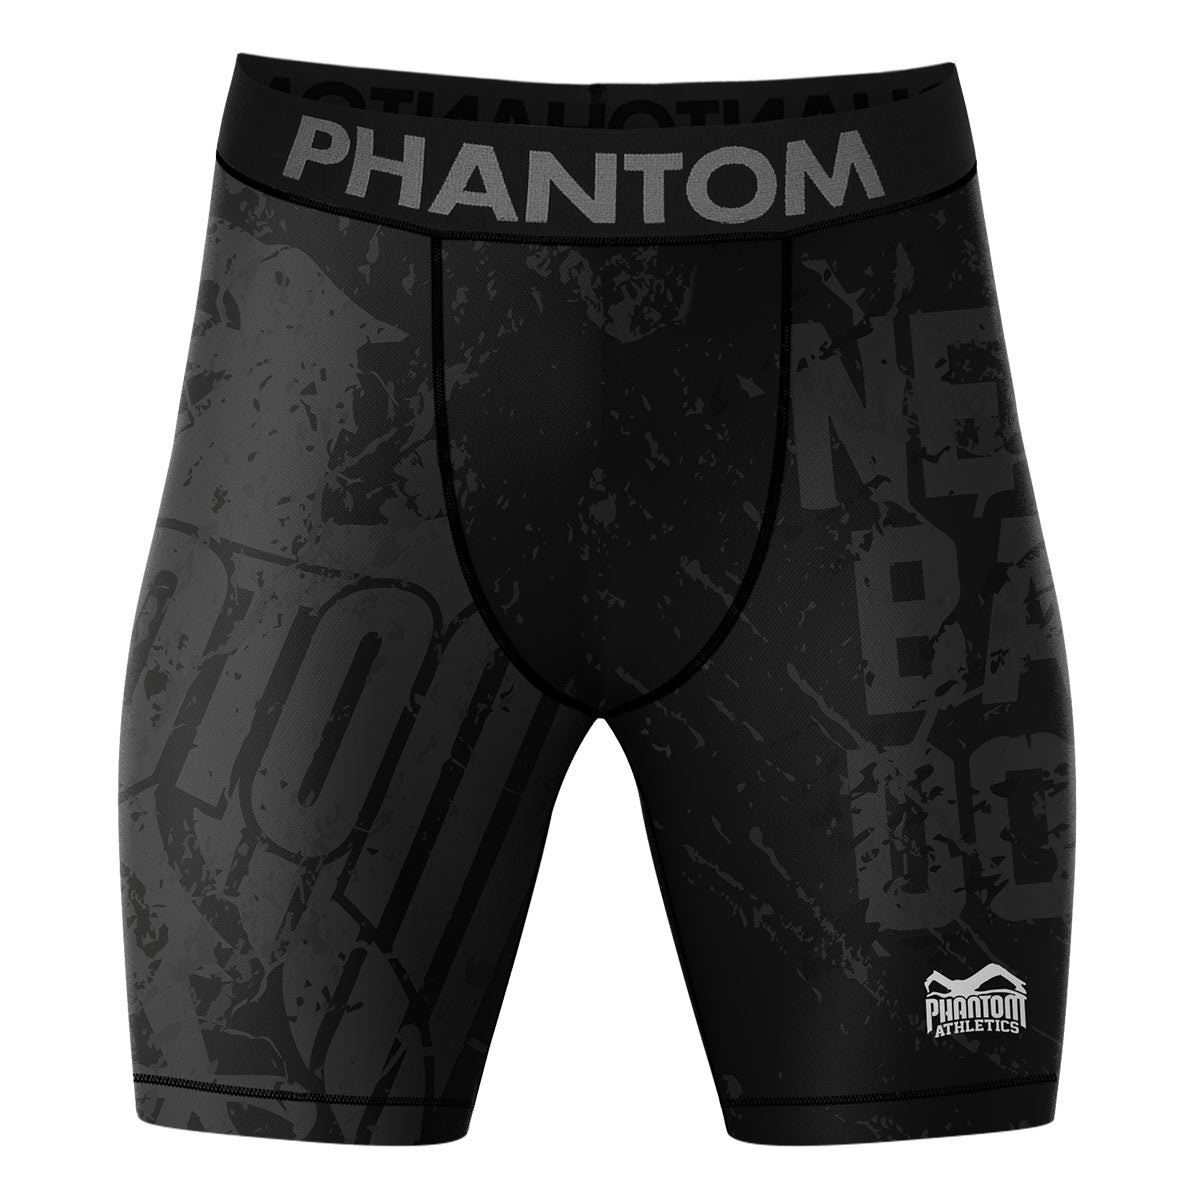 Компресионните бойни шорти Phantom EVO в дизайна на Team Germany. С германски орел и надпис "Никога не се отдръпвай". Идеален за вашите бойни спортове, като MMA, муай тай, борба, BJJ или кикбокс.